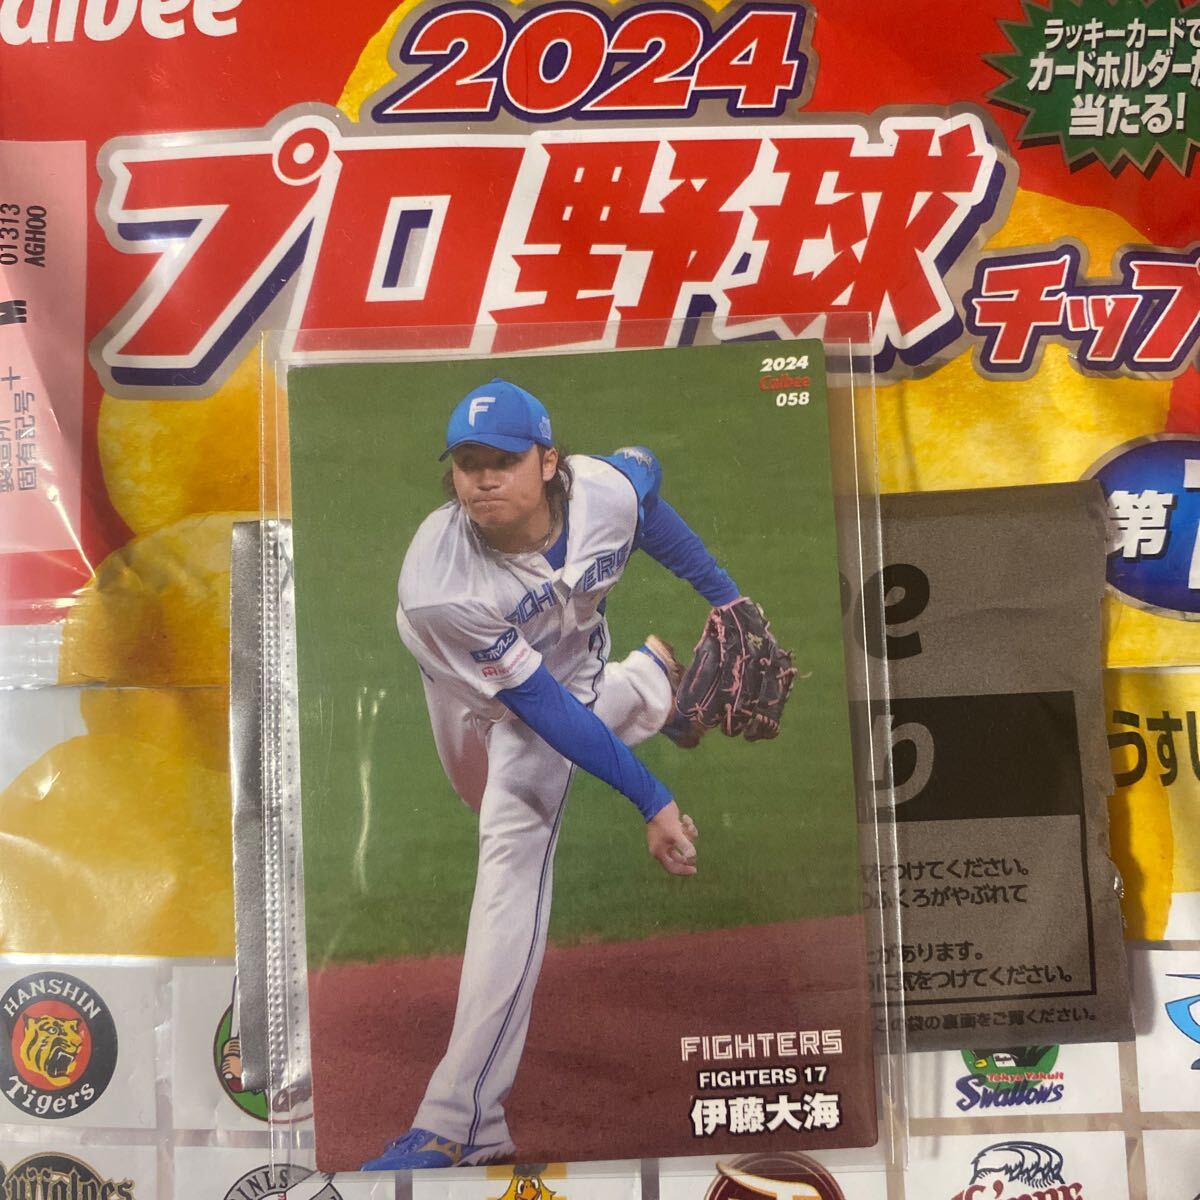 伊藤大海選手のレギュラーカード プロ野球チップス2024年版第1弾(No.058) 北海道日本ハムファイターズの画像2